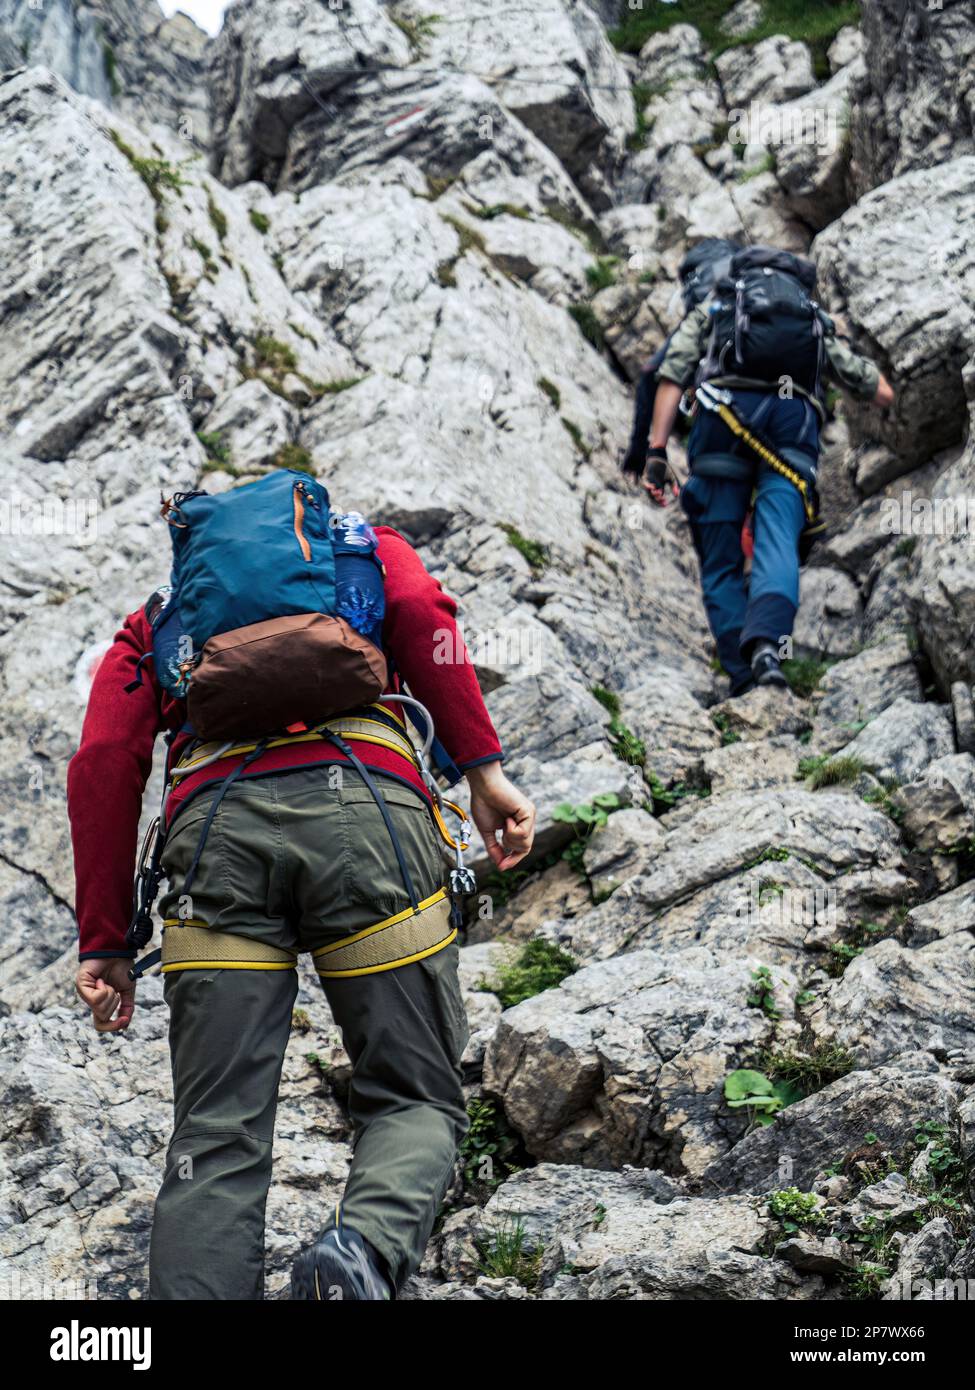 Deux alpinistes avec sac à dos sur une route via ferrata sur une montagne Zugspitze Alpes bavaroises Allemagne Banque D'Images